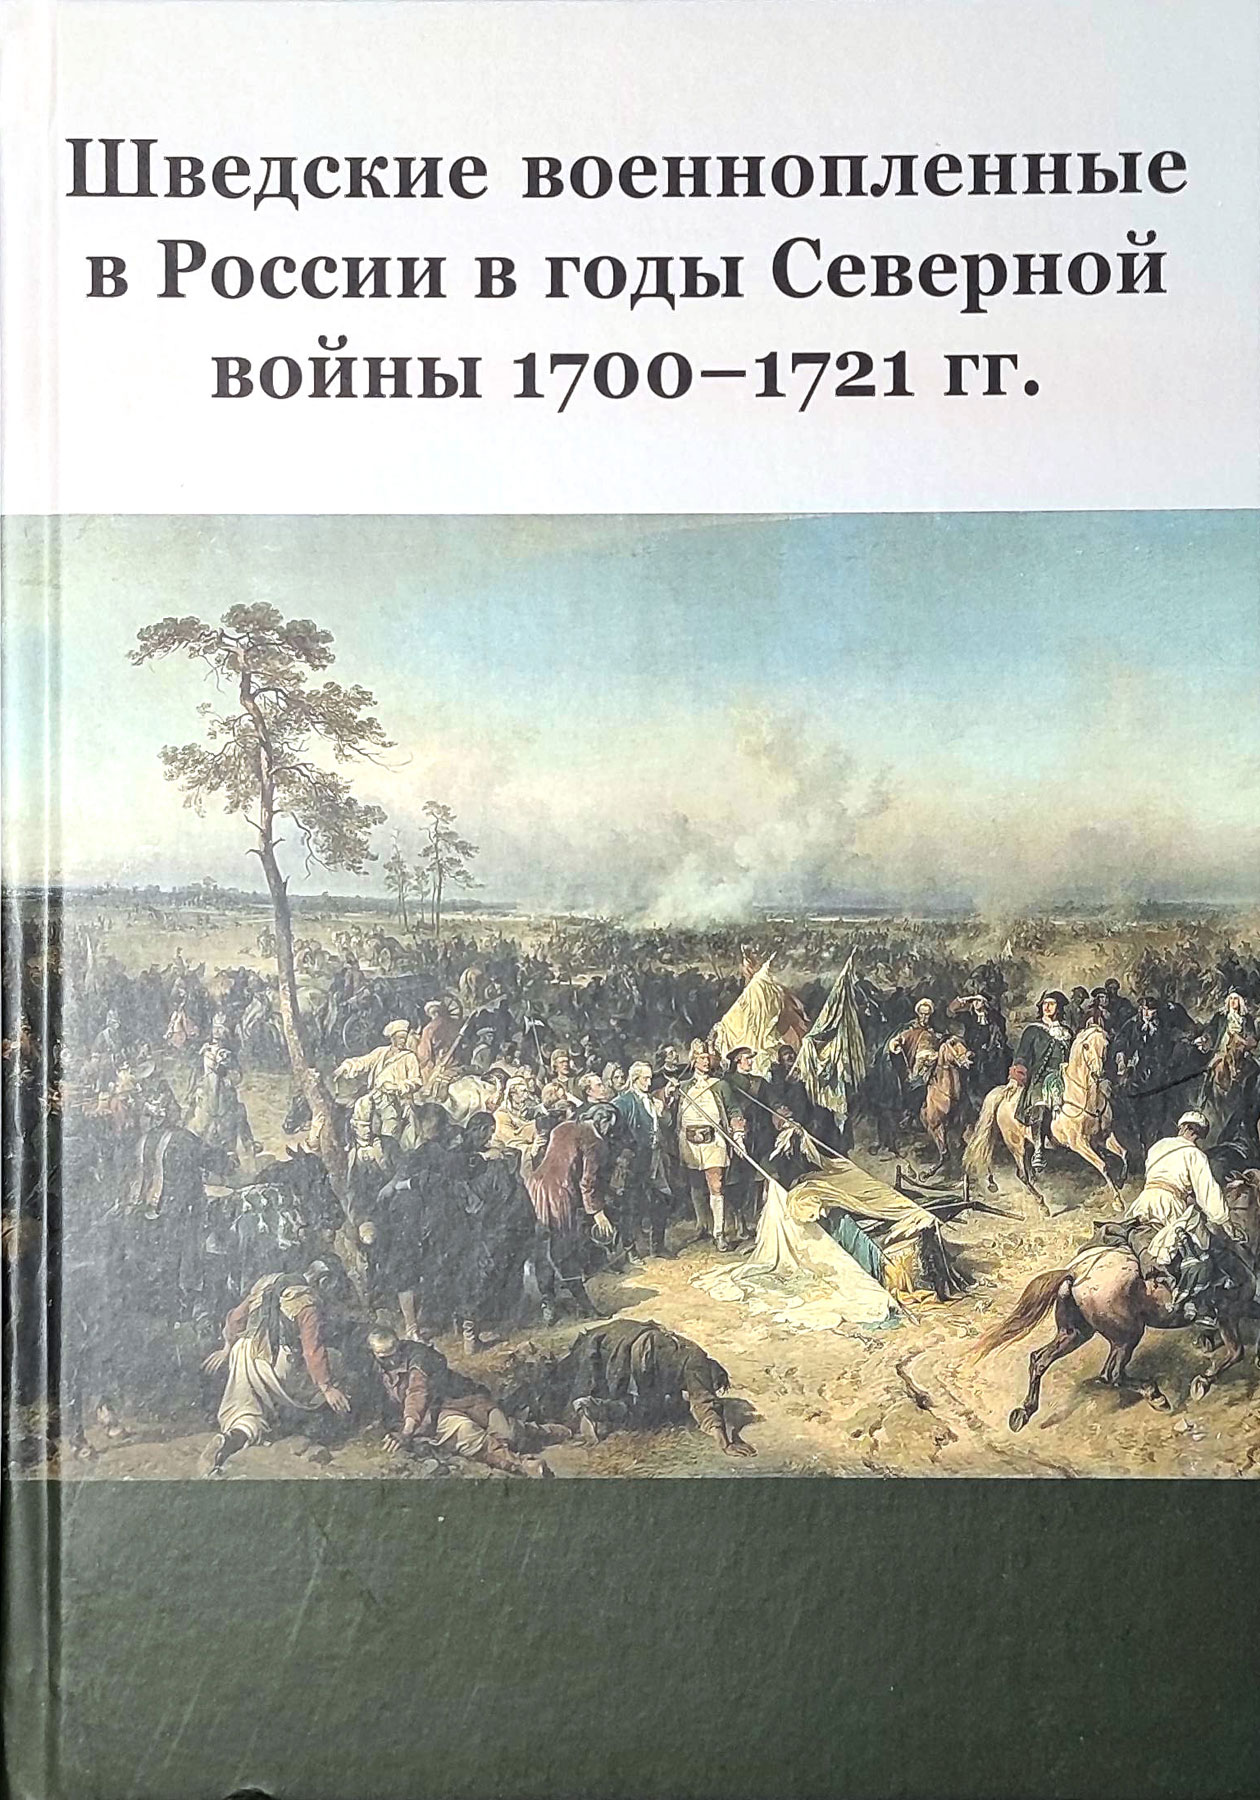 Шведские военнопленные в России в годы Северной войны 1700-1721 гг.